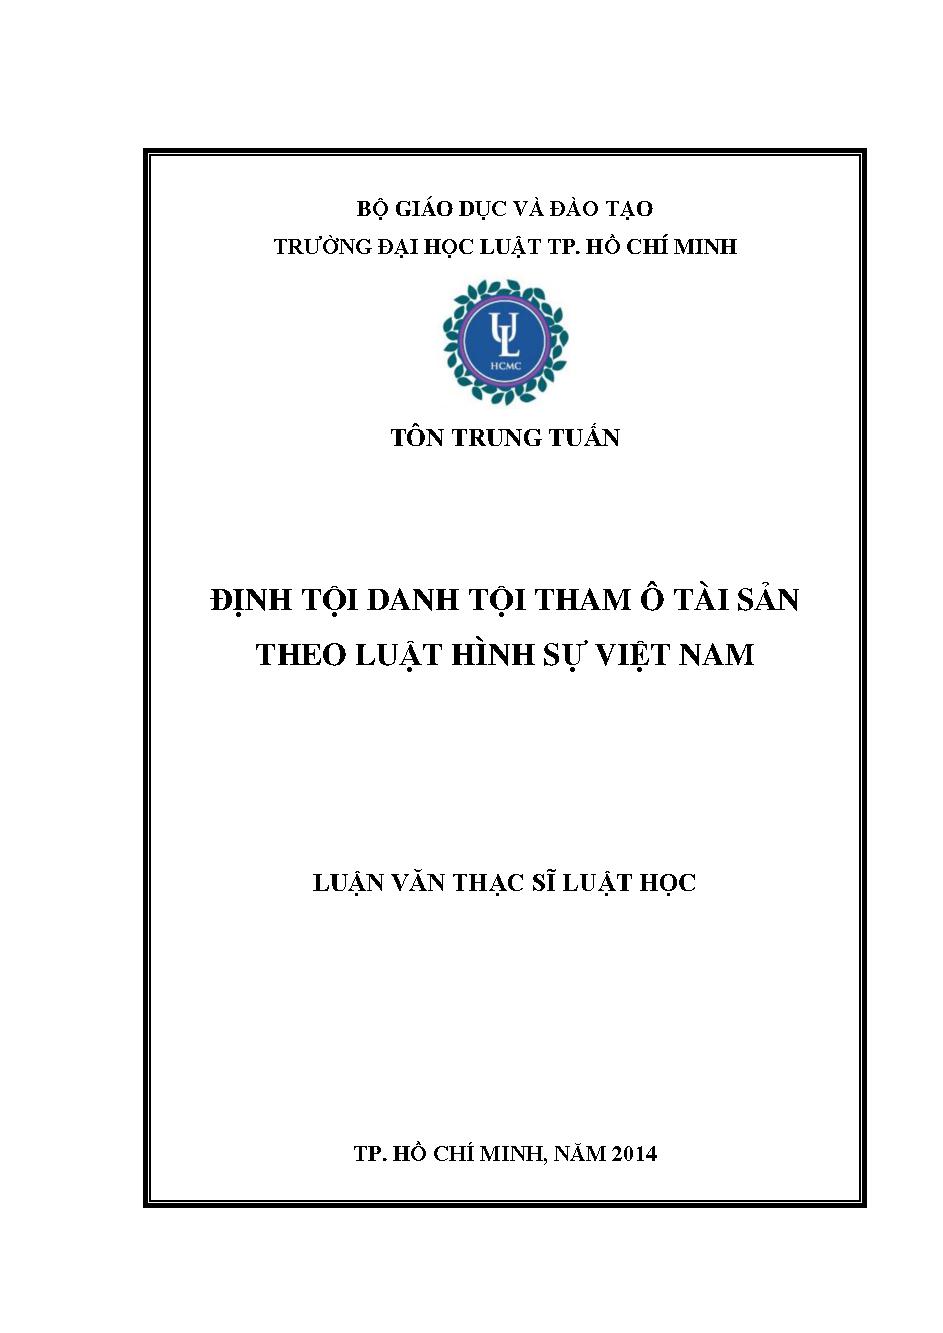 Định tội danh tham ô tài sản theo luật hình sự Việt Nam